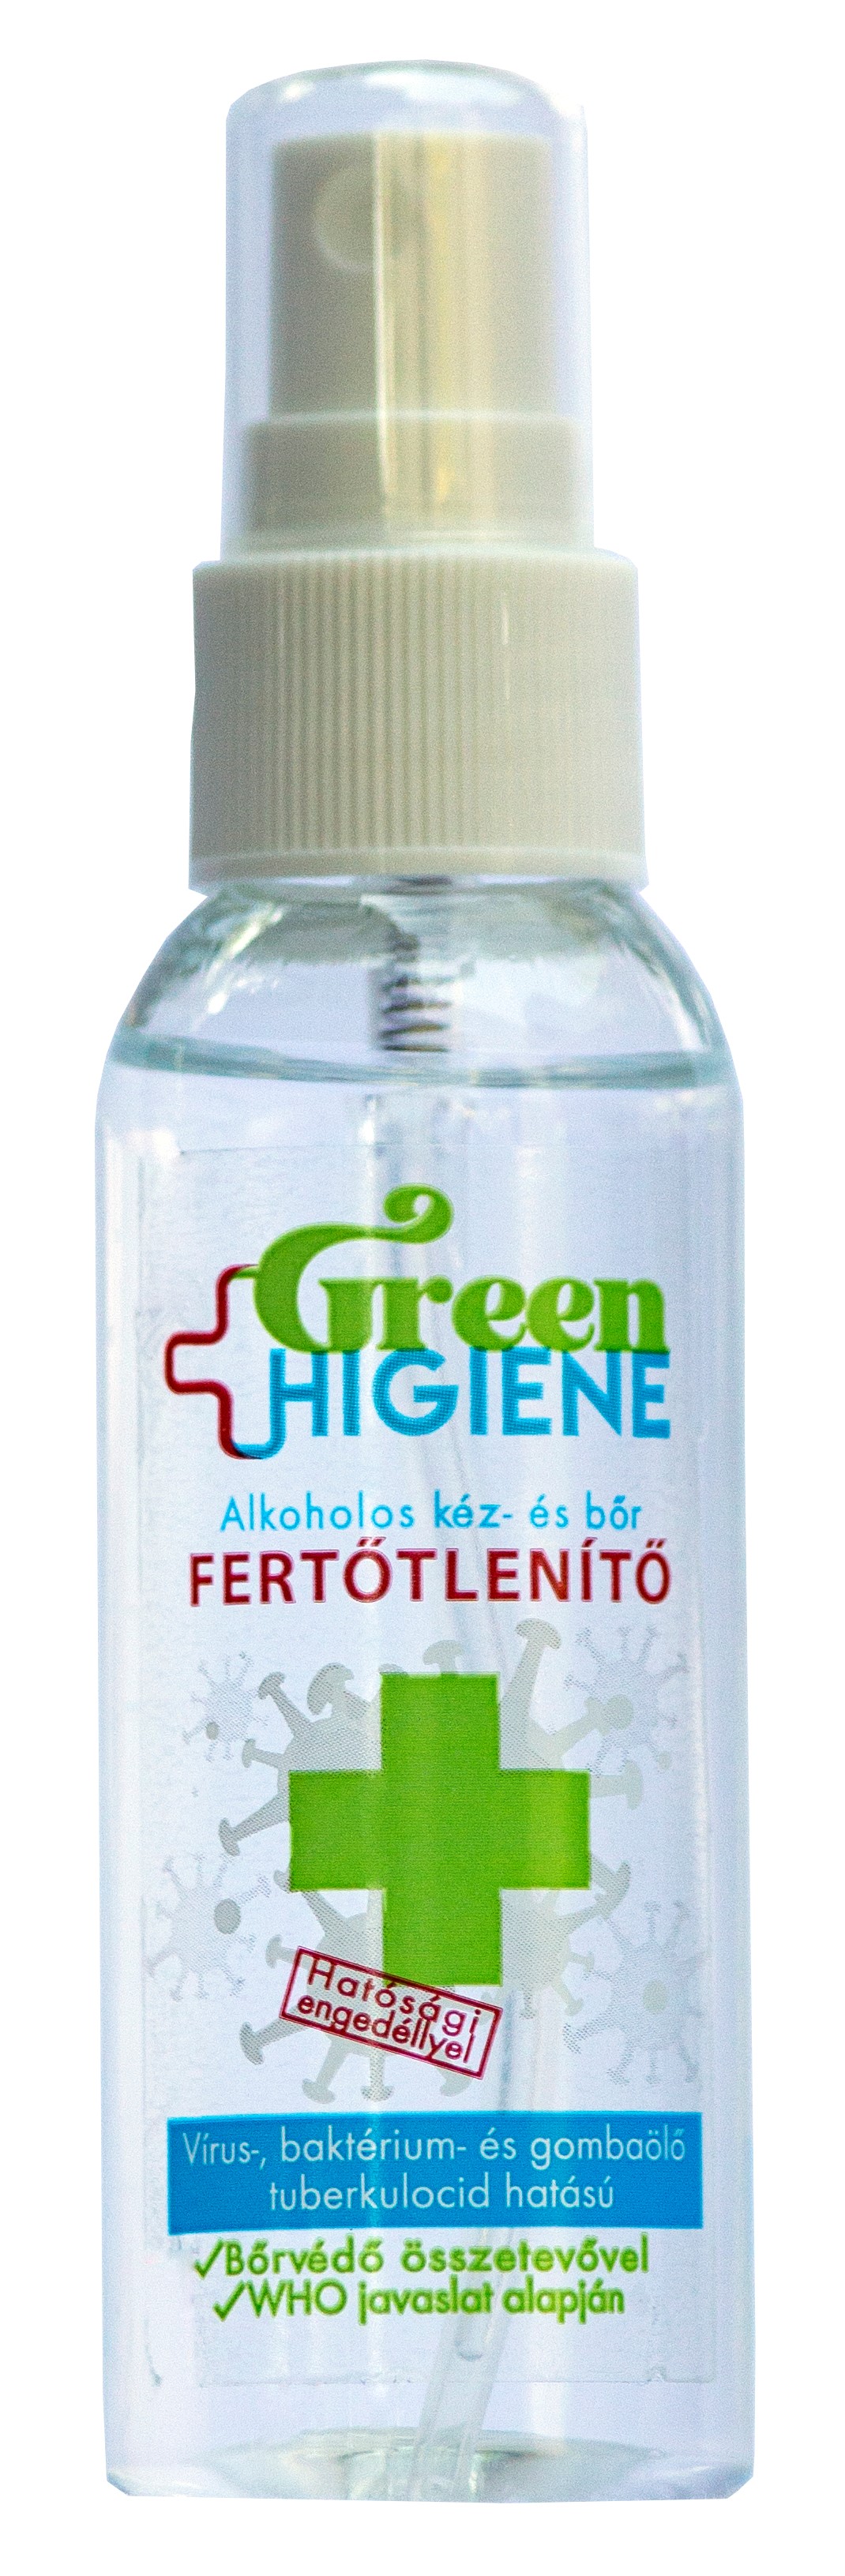 *Green Higiene Alkoholos Kézfertőtlenítő folyadék 50 ml